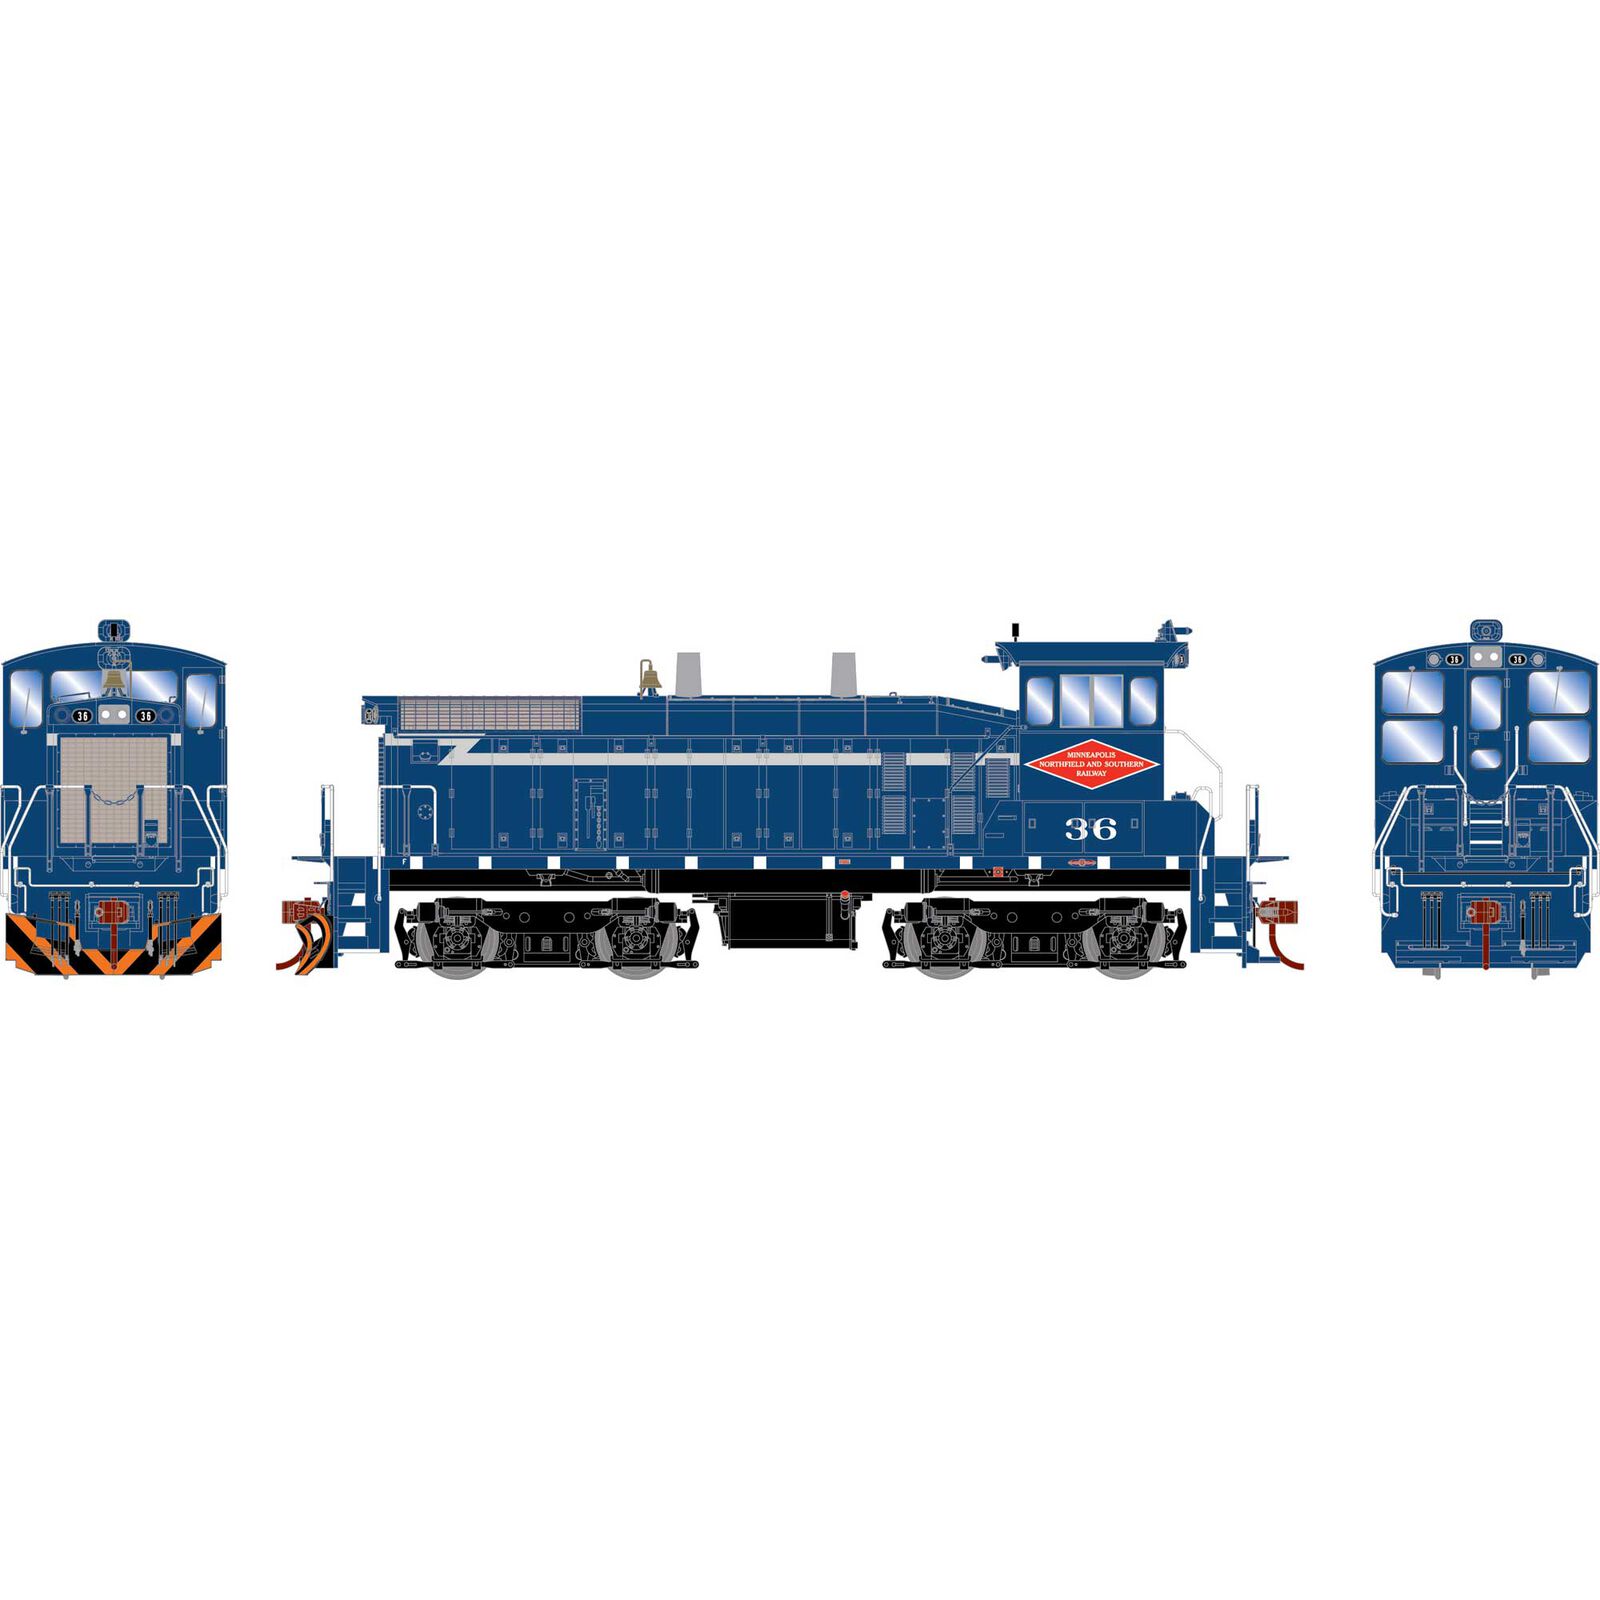 HO SW1500 Locomotive with DCC & Sound, MNS #36